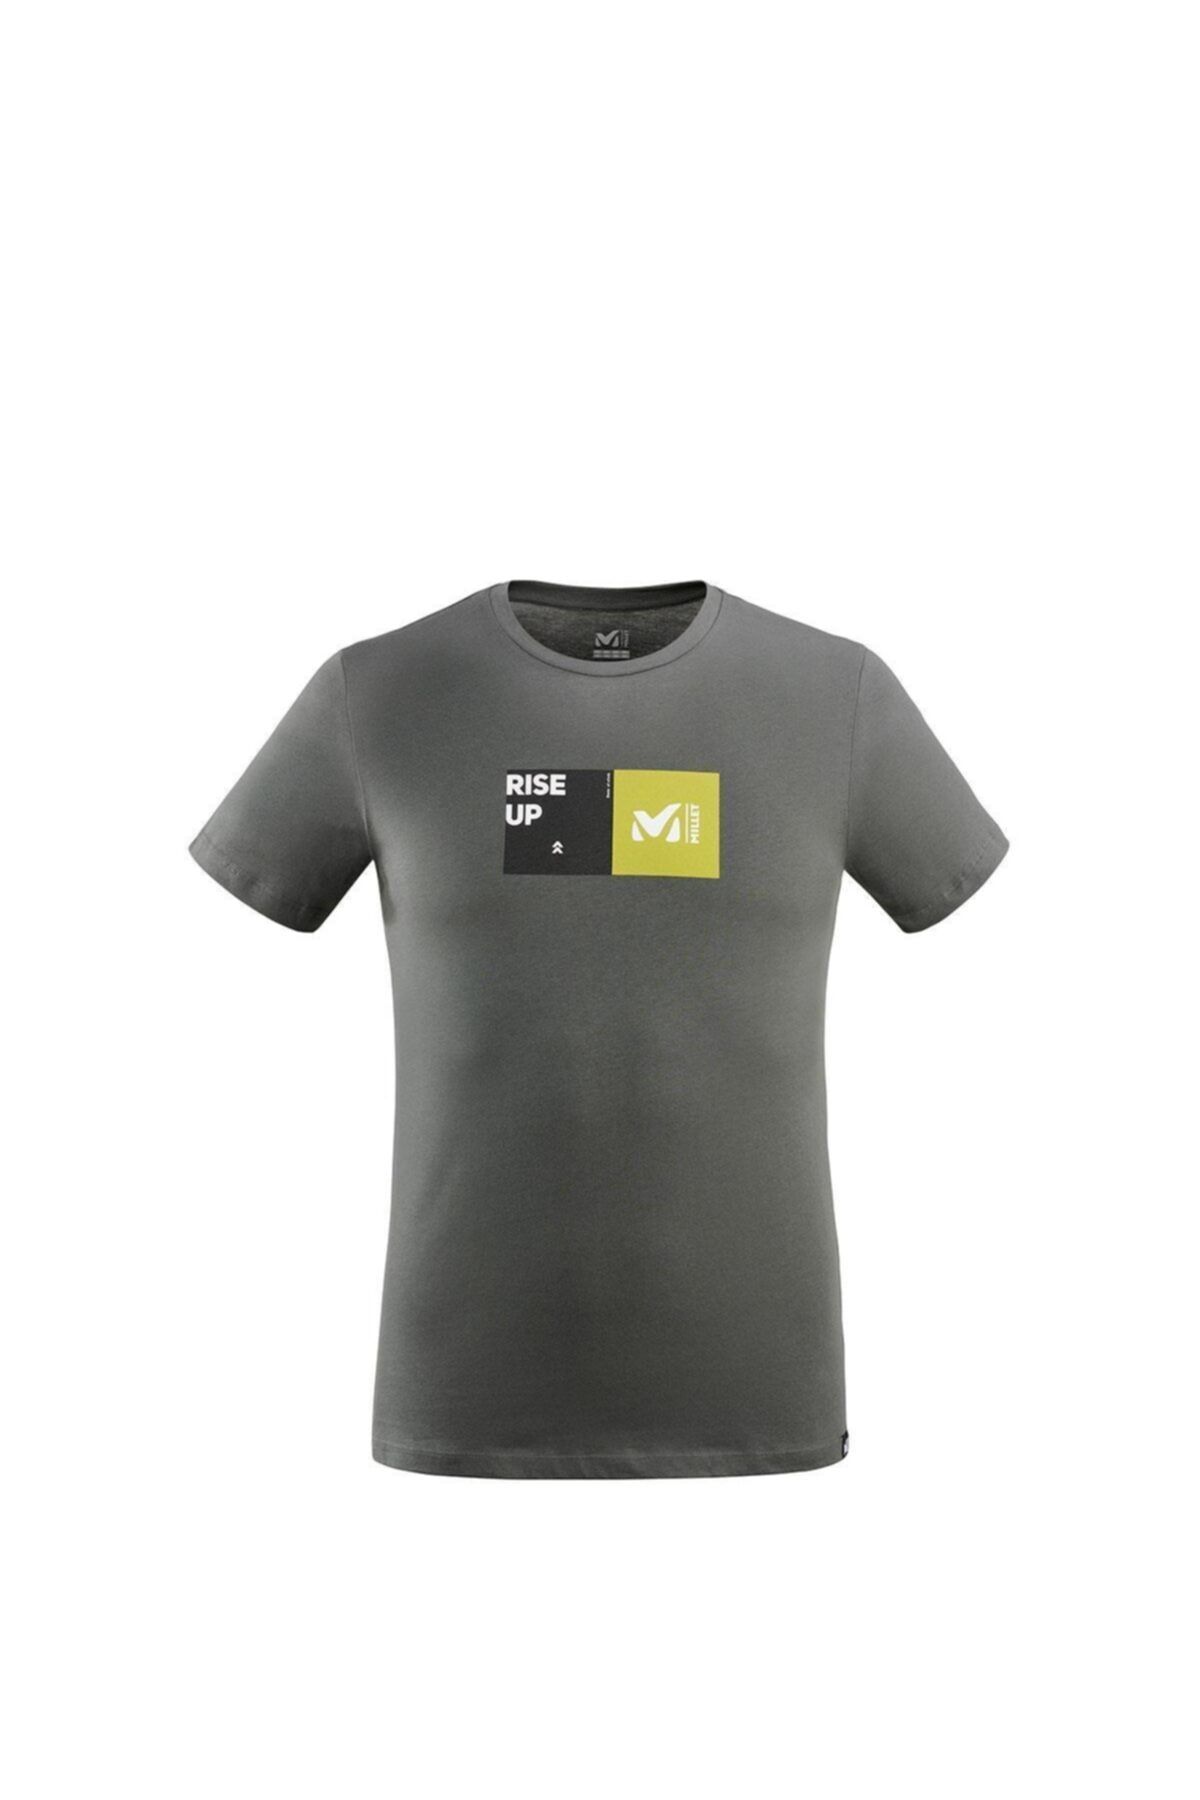 Millet Erkek Gri T-shirt Mıv8671